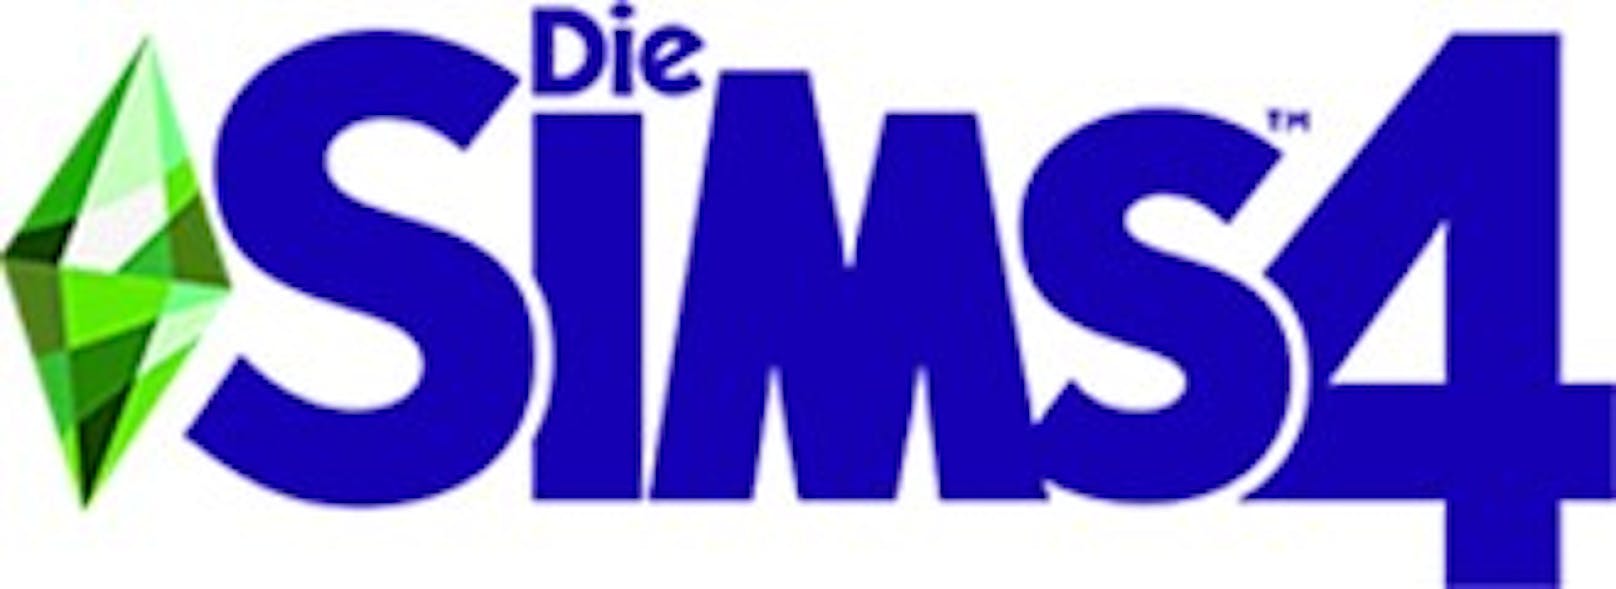 Finale des Reality-TV-Formates Die Sims Sparkd wird ausgestrahlt.